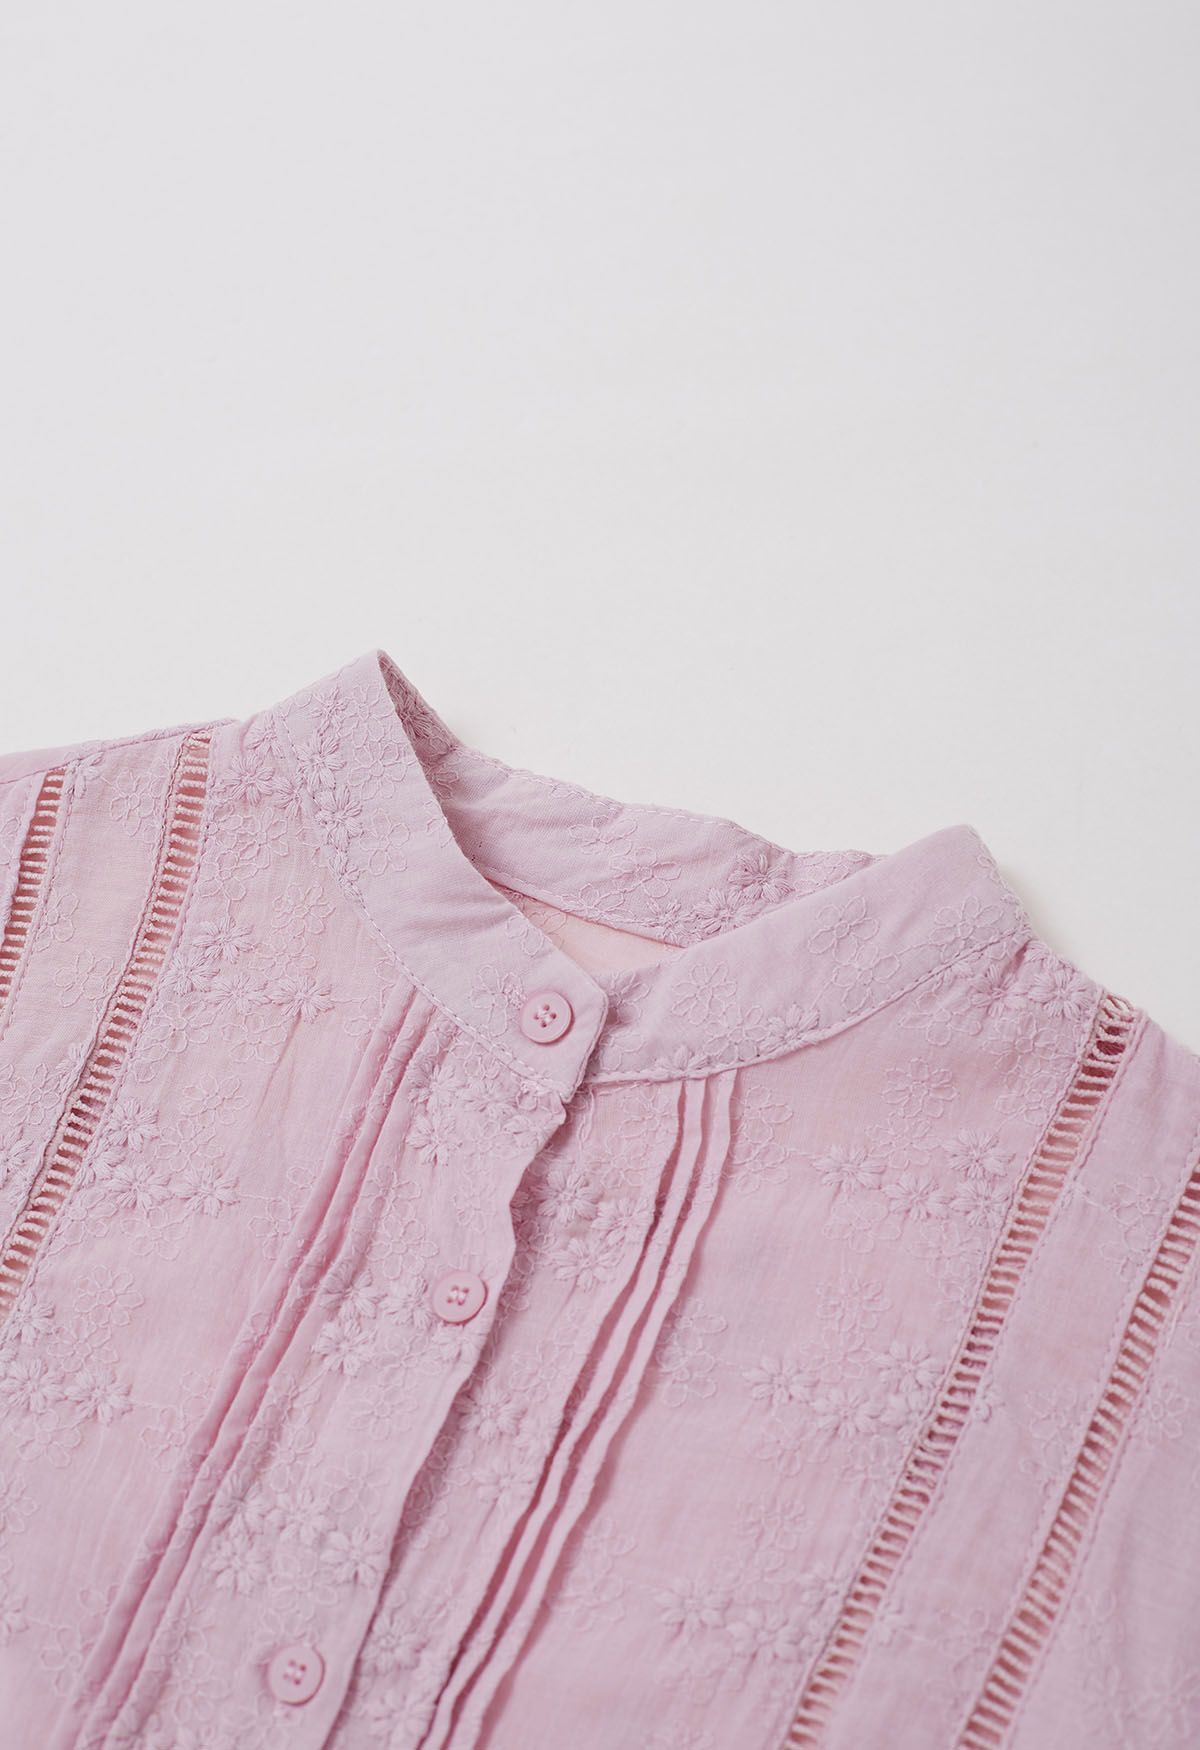 Camisa con botones y cierres bordado Floret en rosa